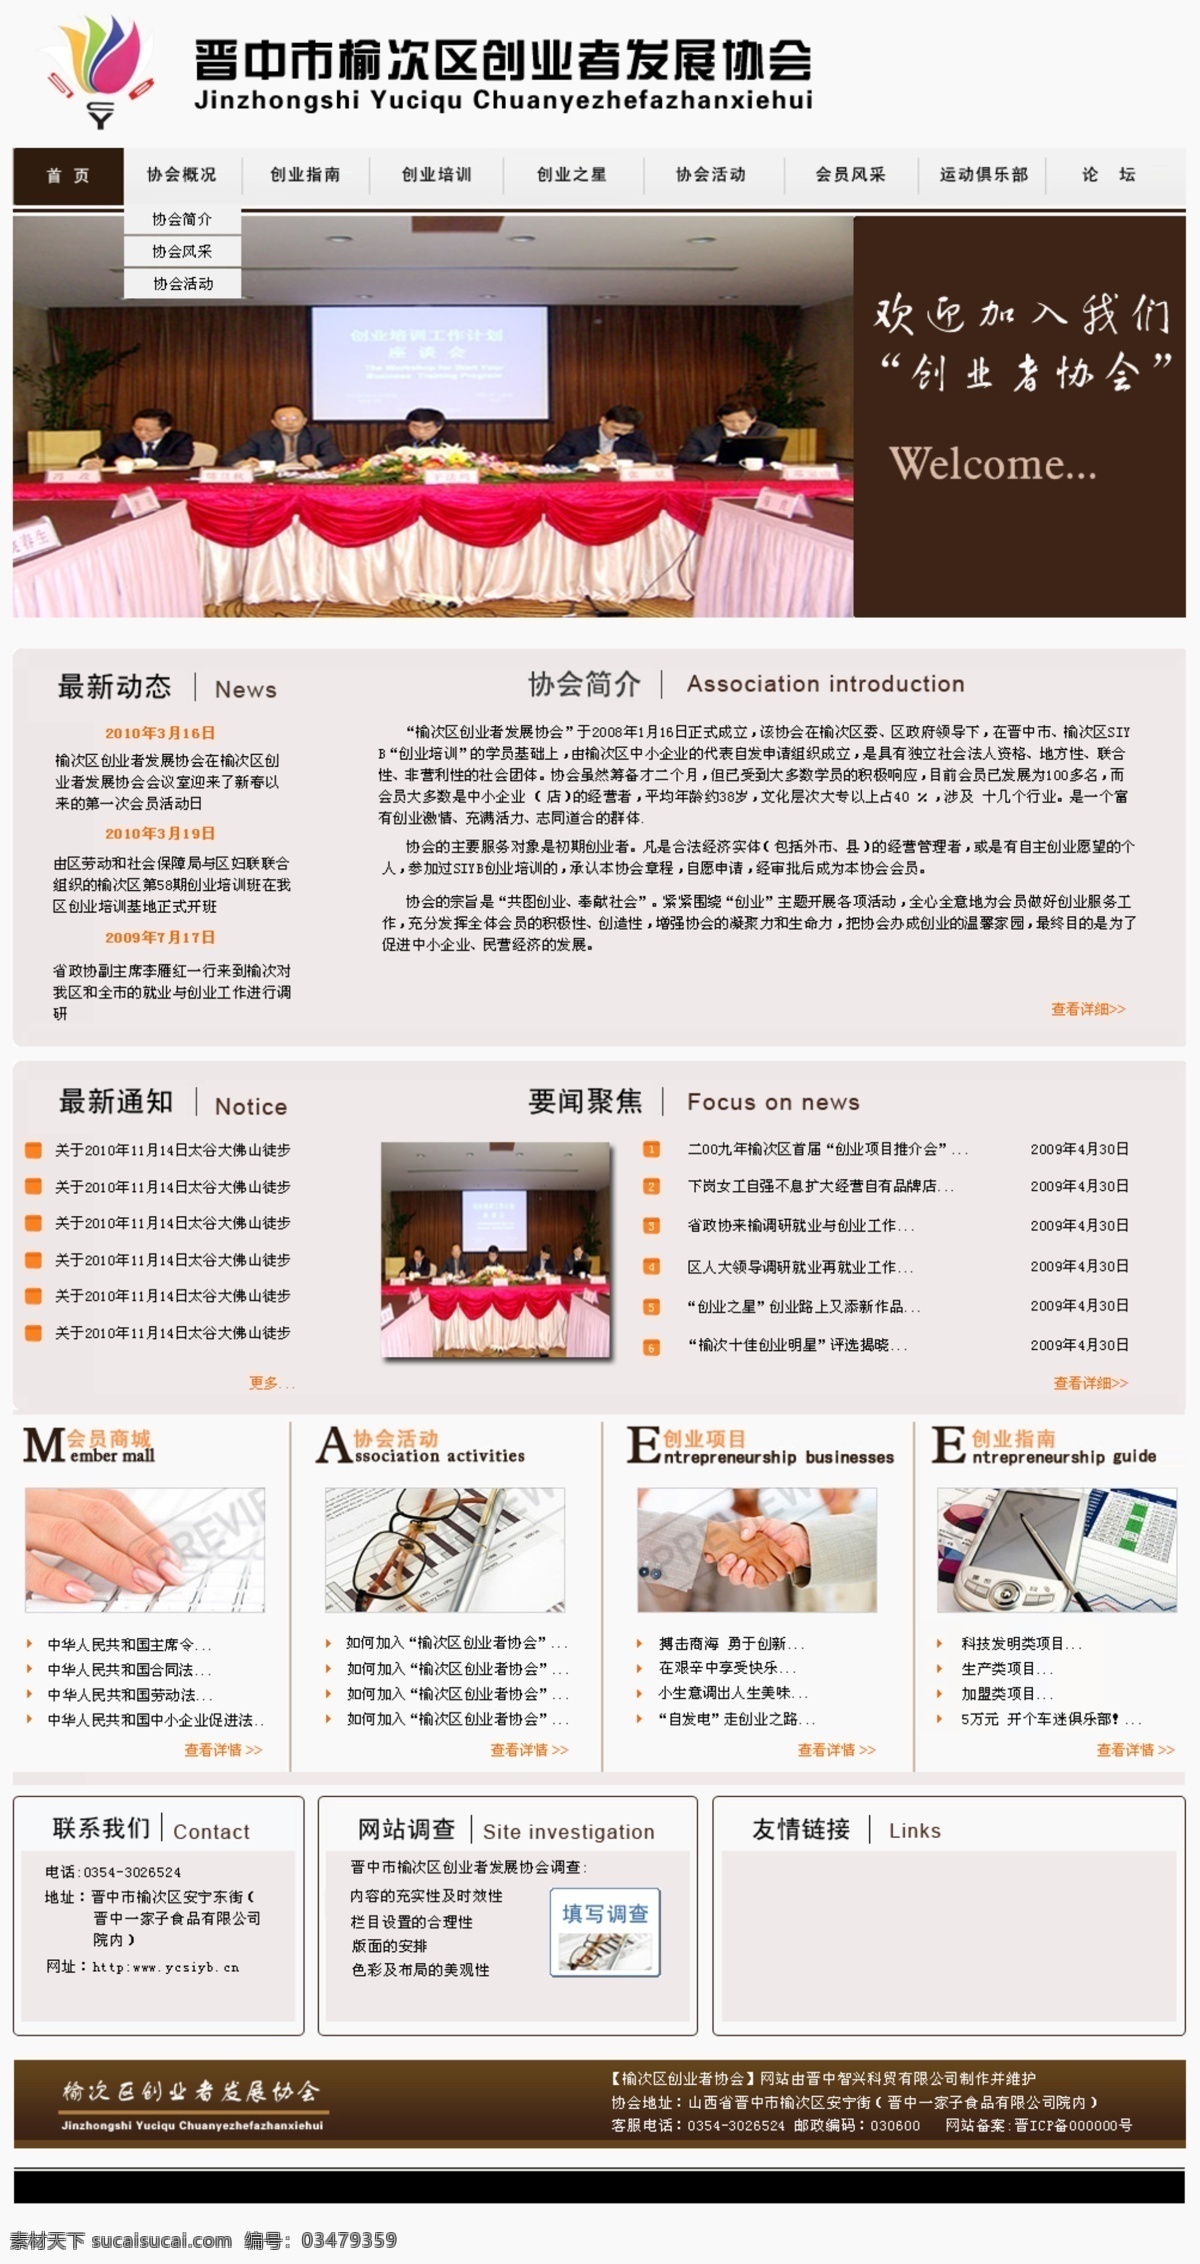 创业者 协会 网站 发展 晋中市 创业协会 中文模版 网页模板 源文件